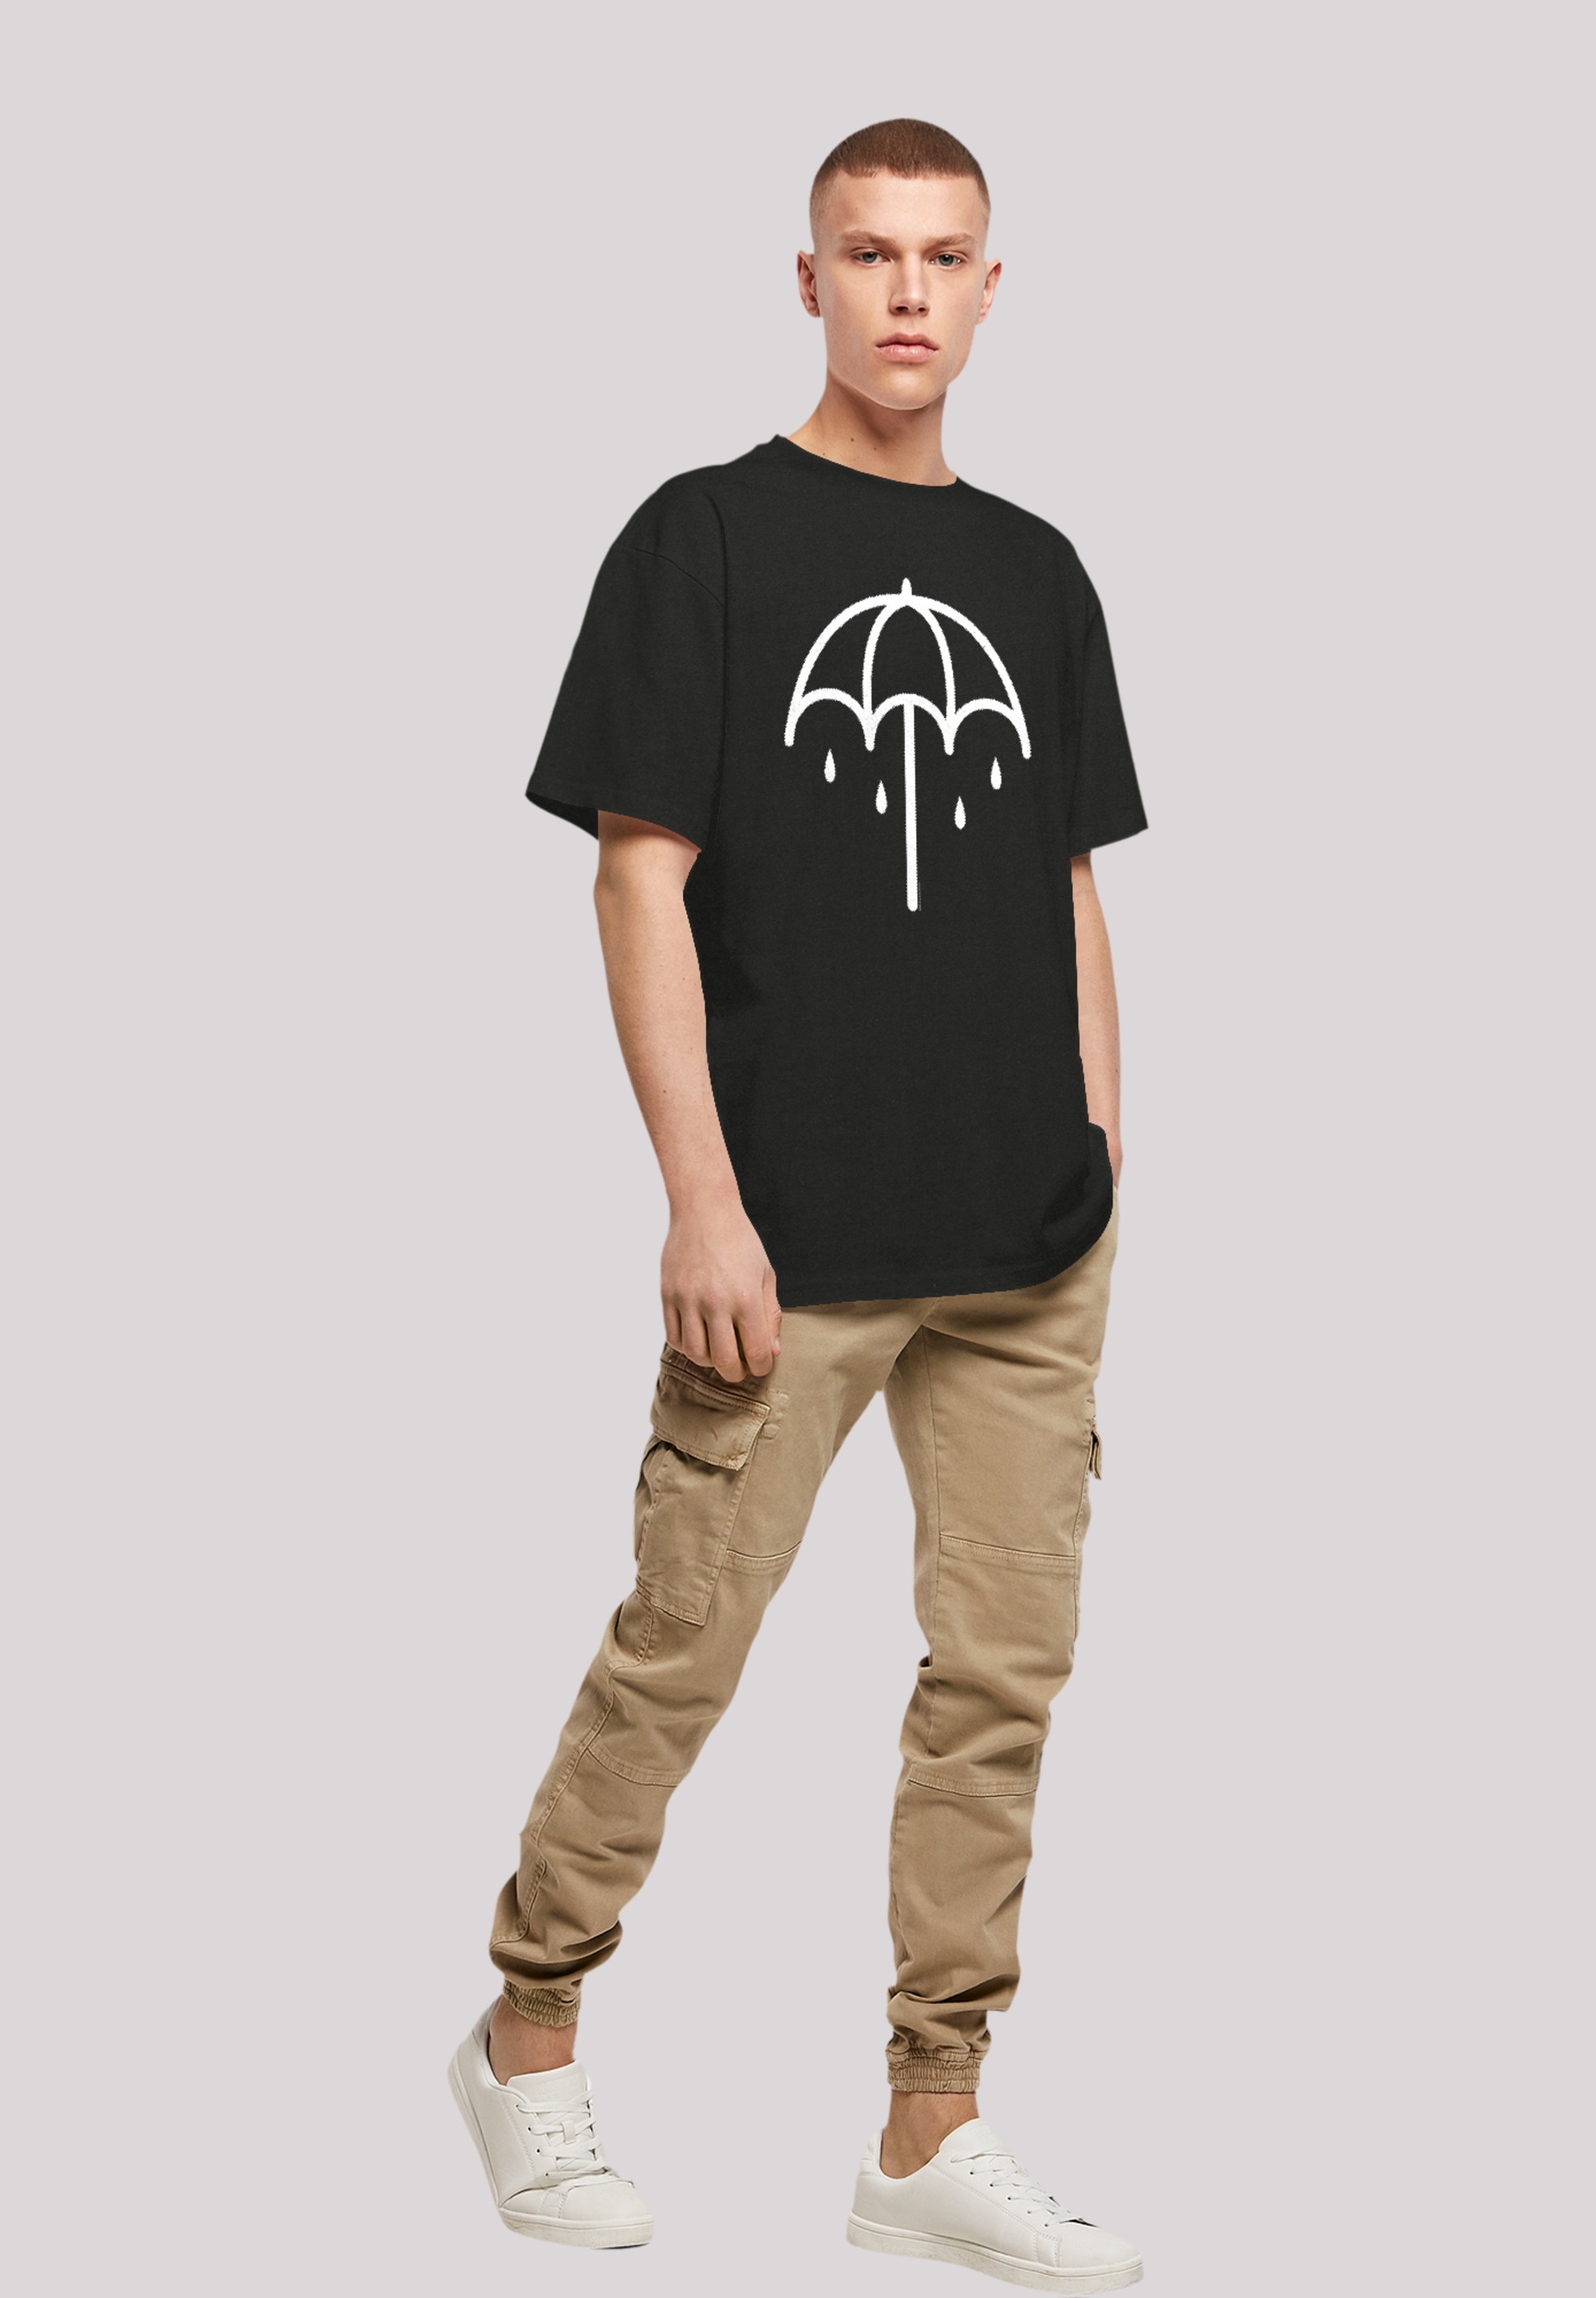 F4NT4STIC T-Shirt BAUR | Umbrella Premium Rock- Metal Qualität, Band 2 »BMTH Band Musik, DARK«, ▷ bestellen